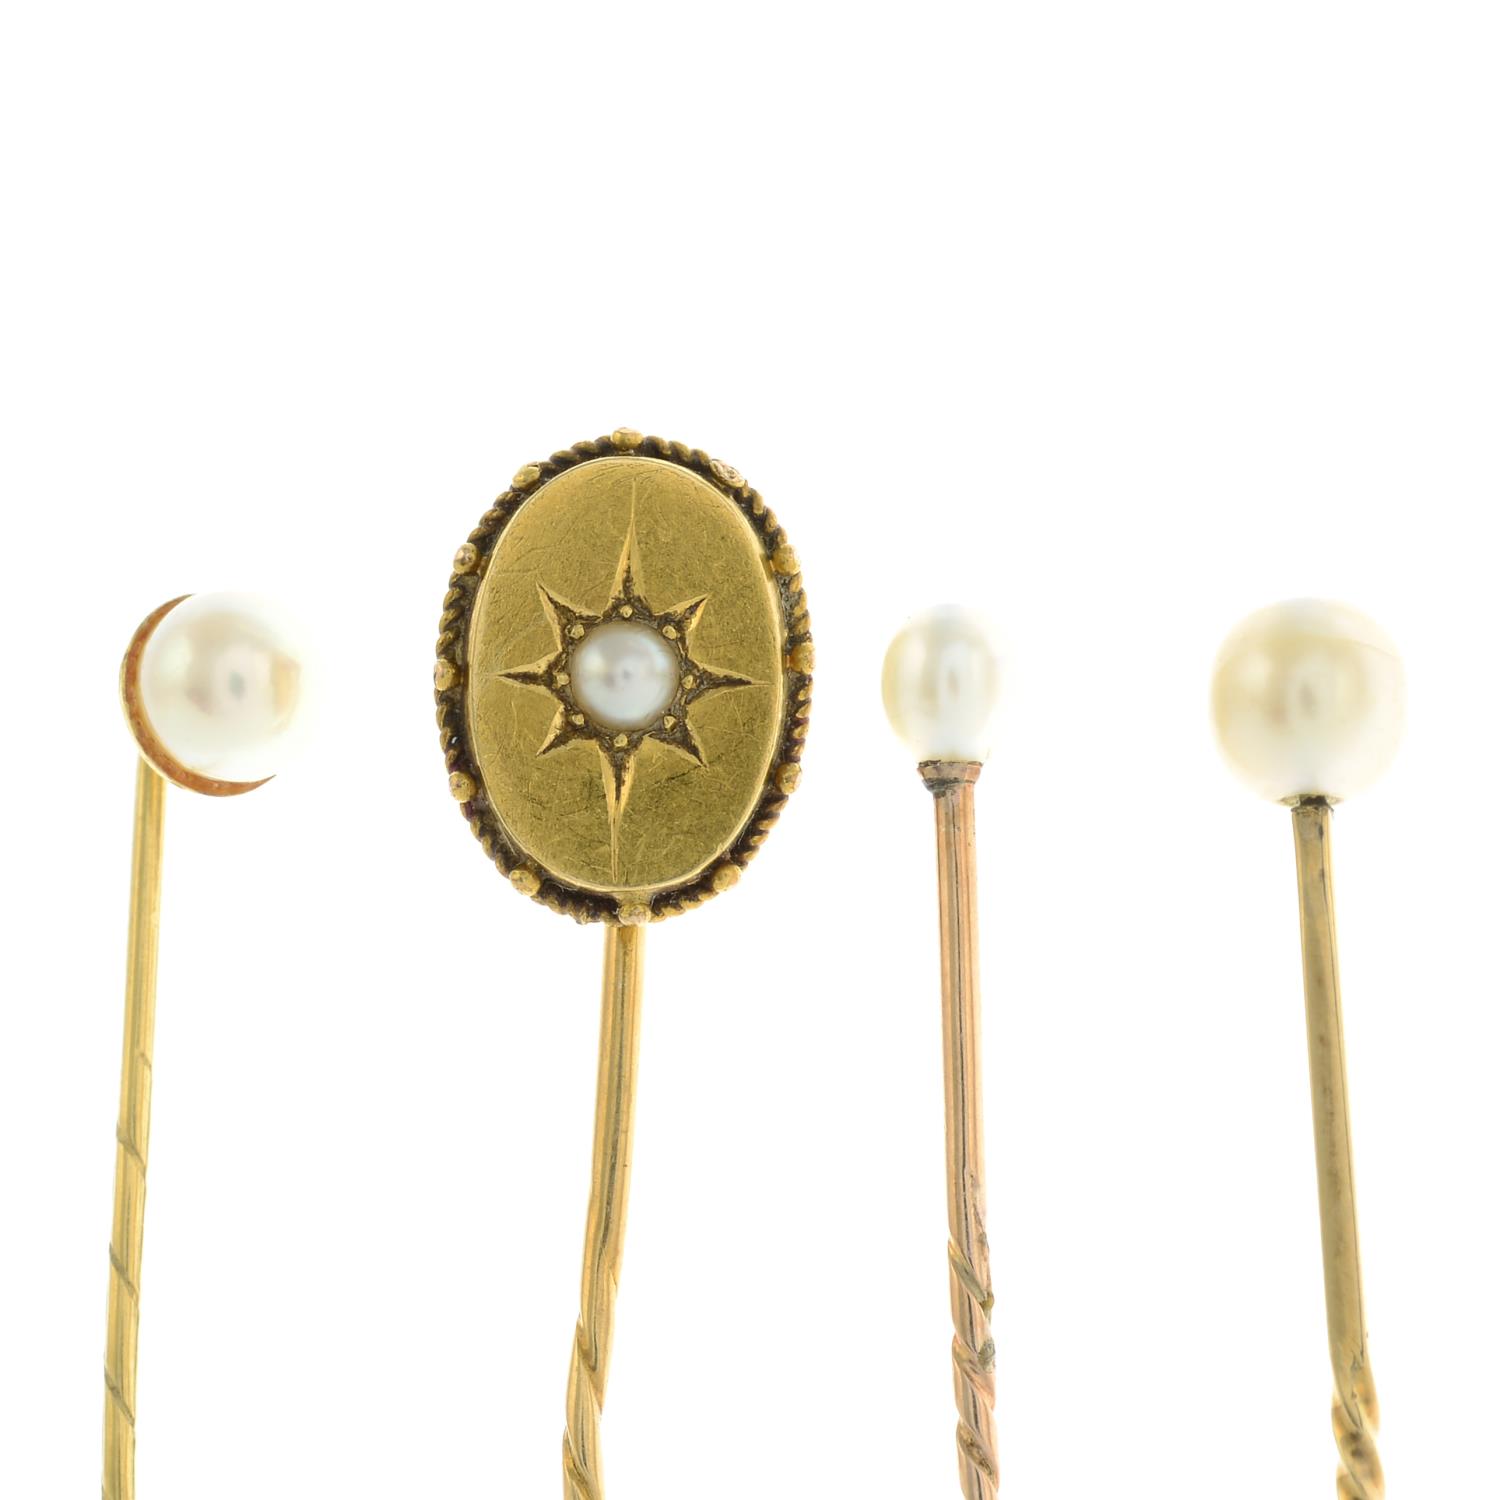 Three cultured pearl stickpins and a split pearl stickpin.